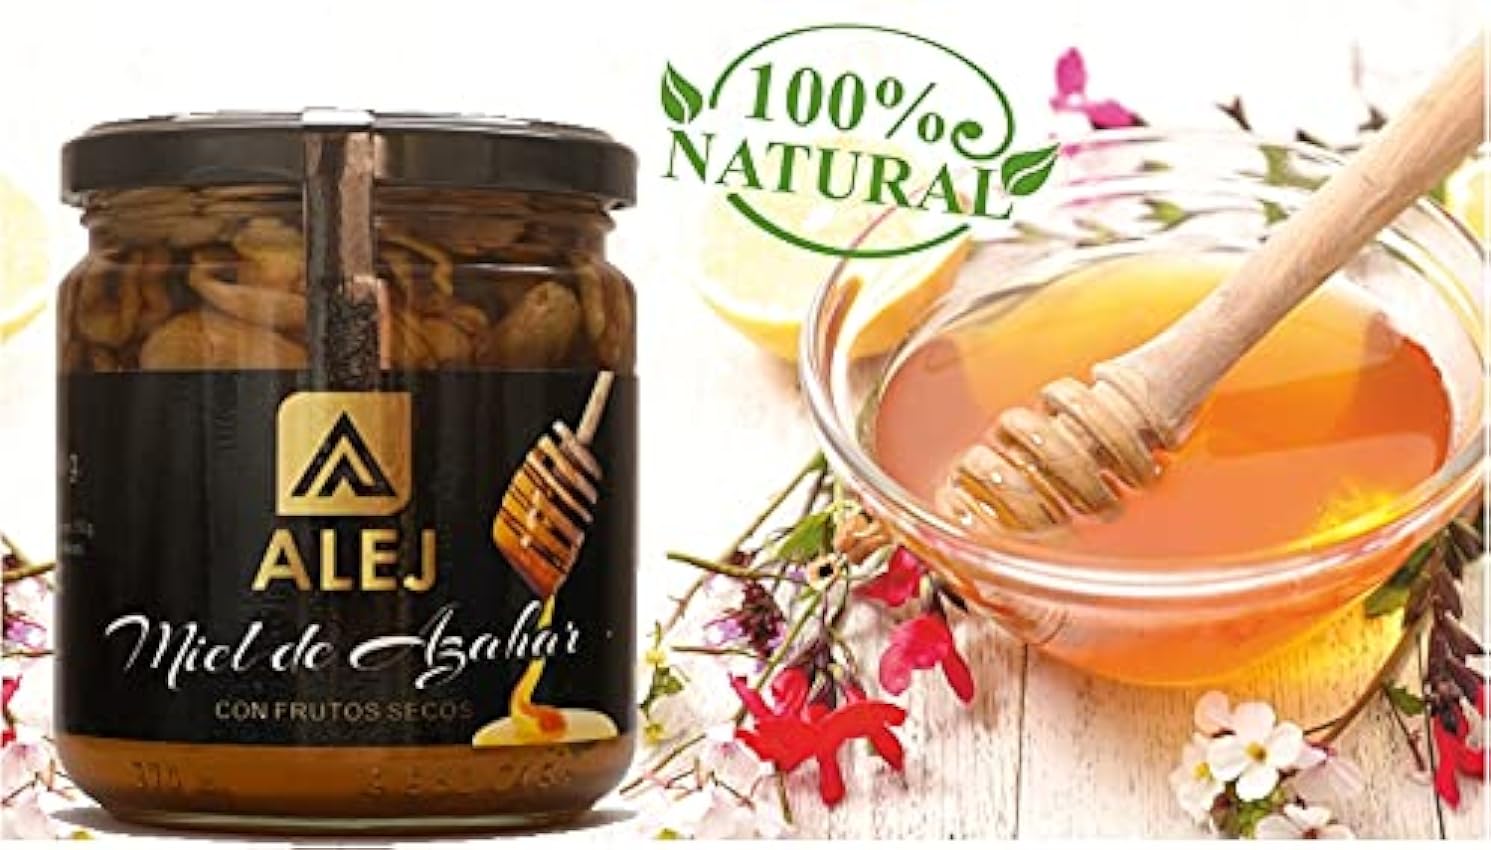 Alej Miel de flores Pura de Abeja Natural Ecologica Gourmet Cruda, Miel 100% Pura Natural Española Honey Sin Filtrar, En Tarro de Cristal de 500g p8yruHWk